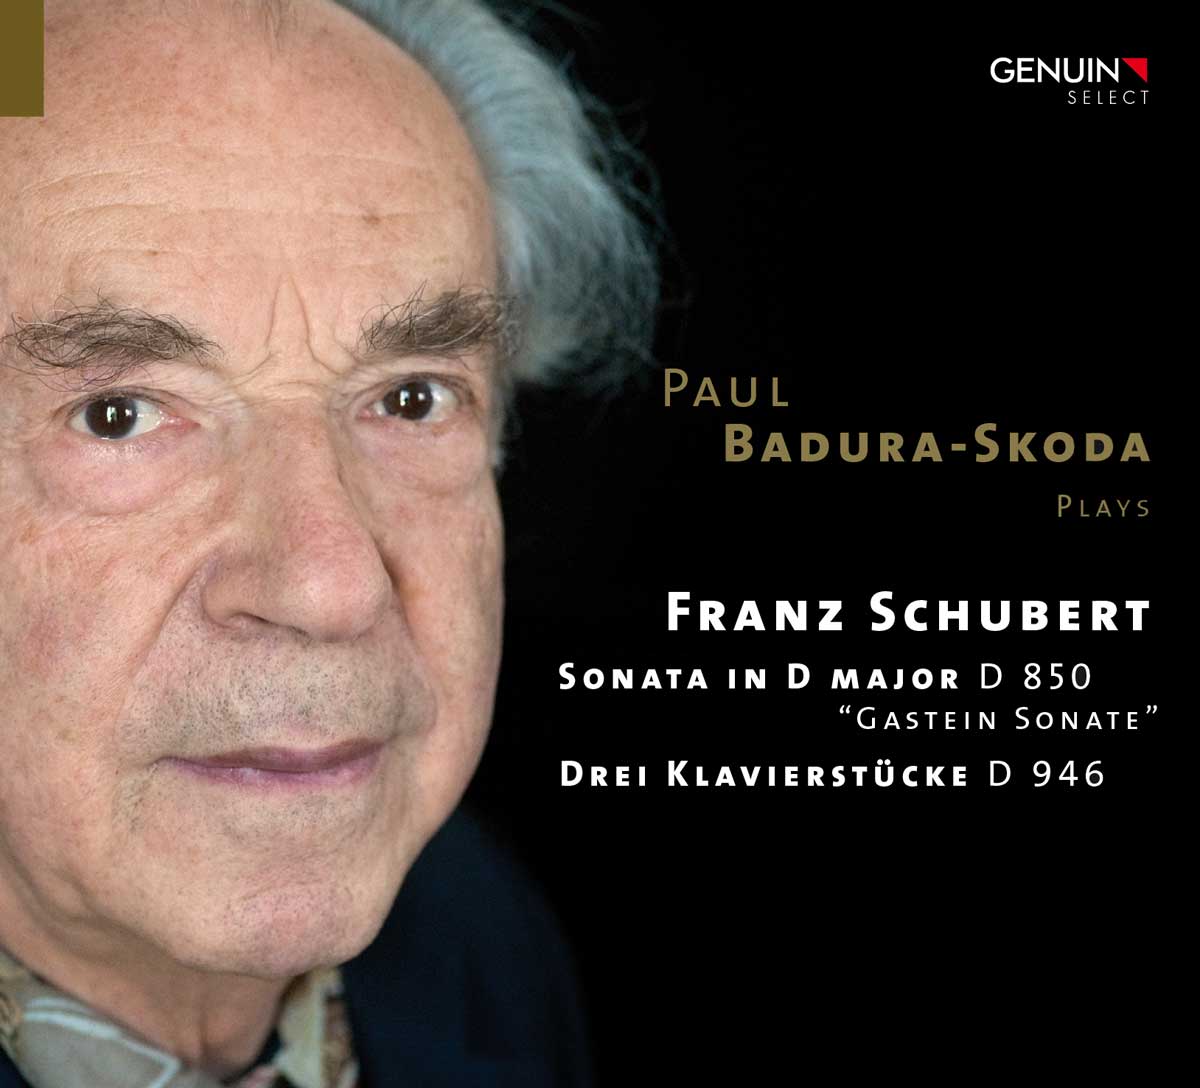 CD album cover 'Franz Schubert' (GEN 16425) with Paul Badura-Skoda